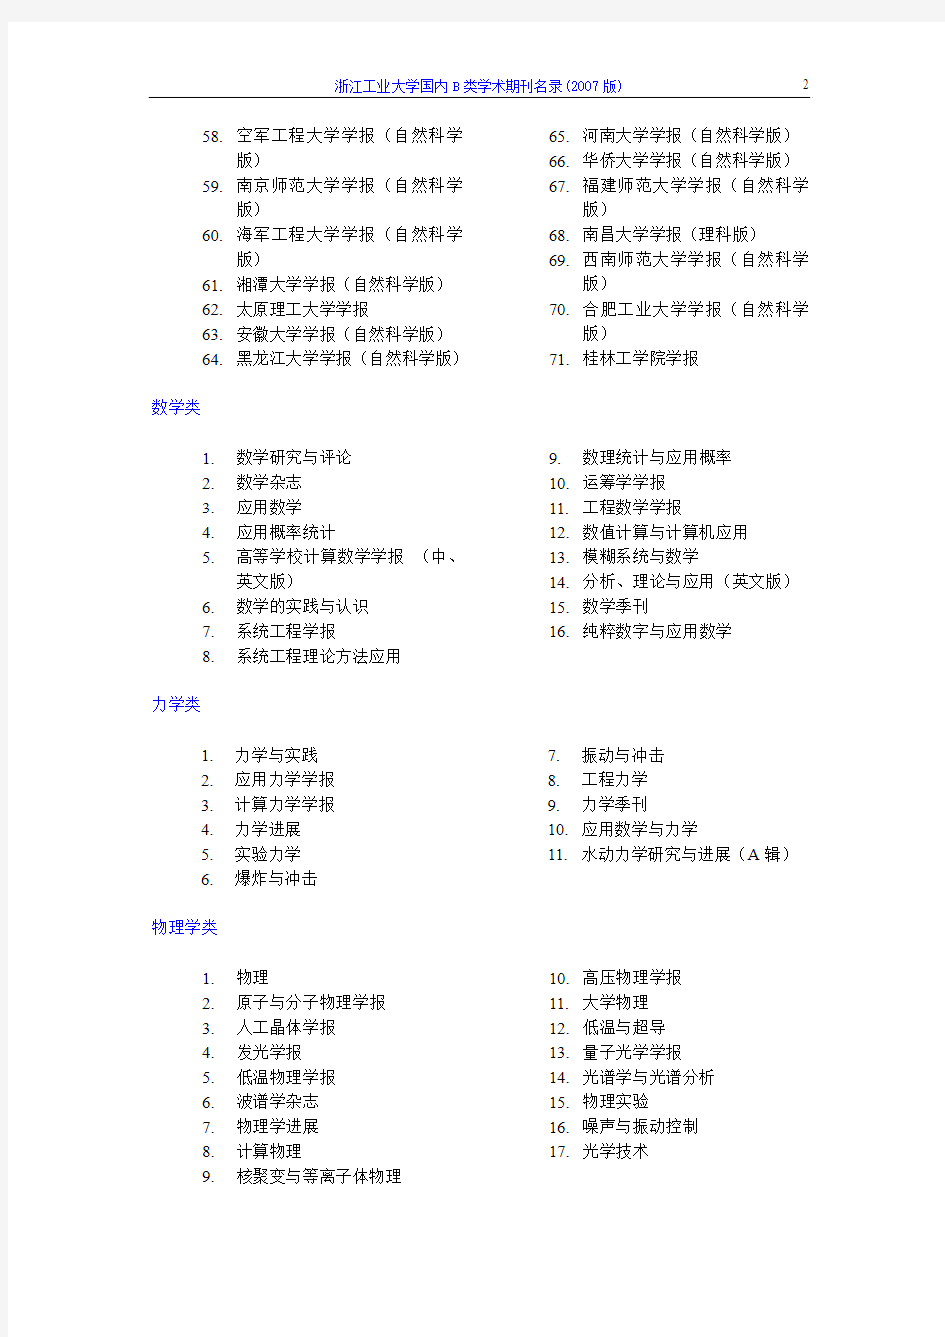 浙江工业大学国内B类学术期刊名录(2007版)